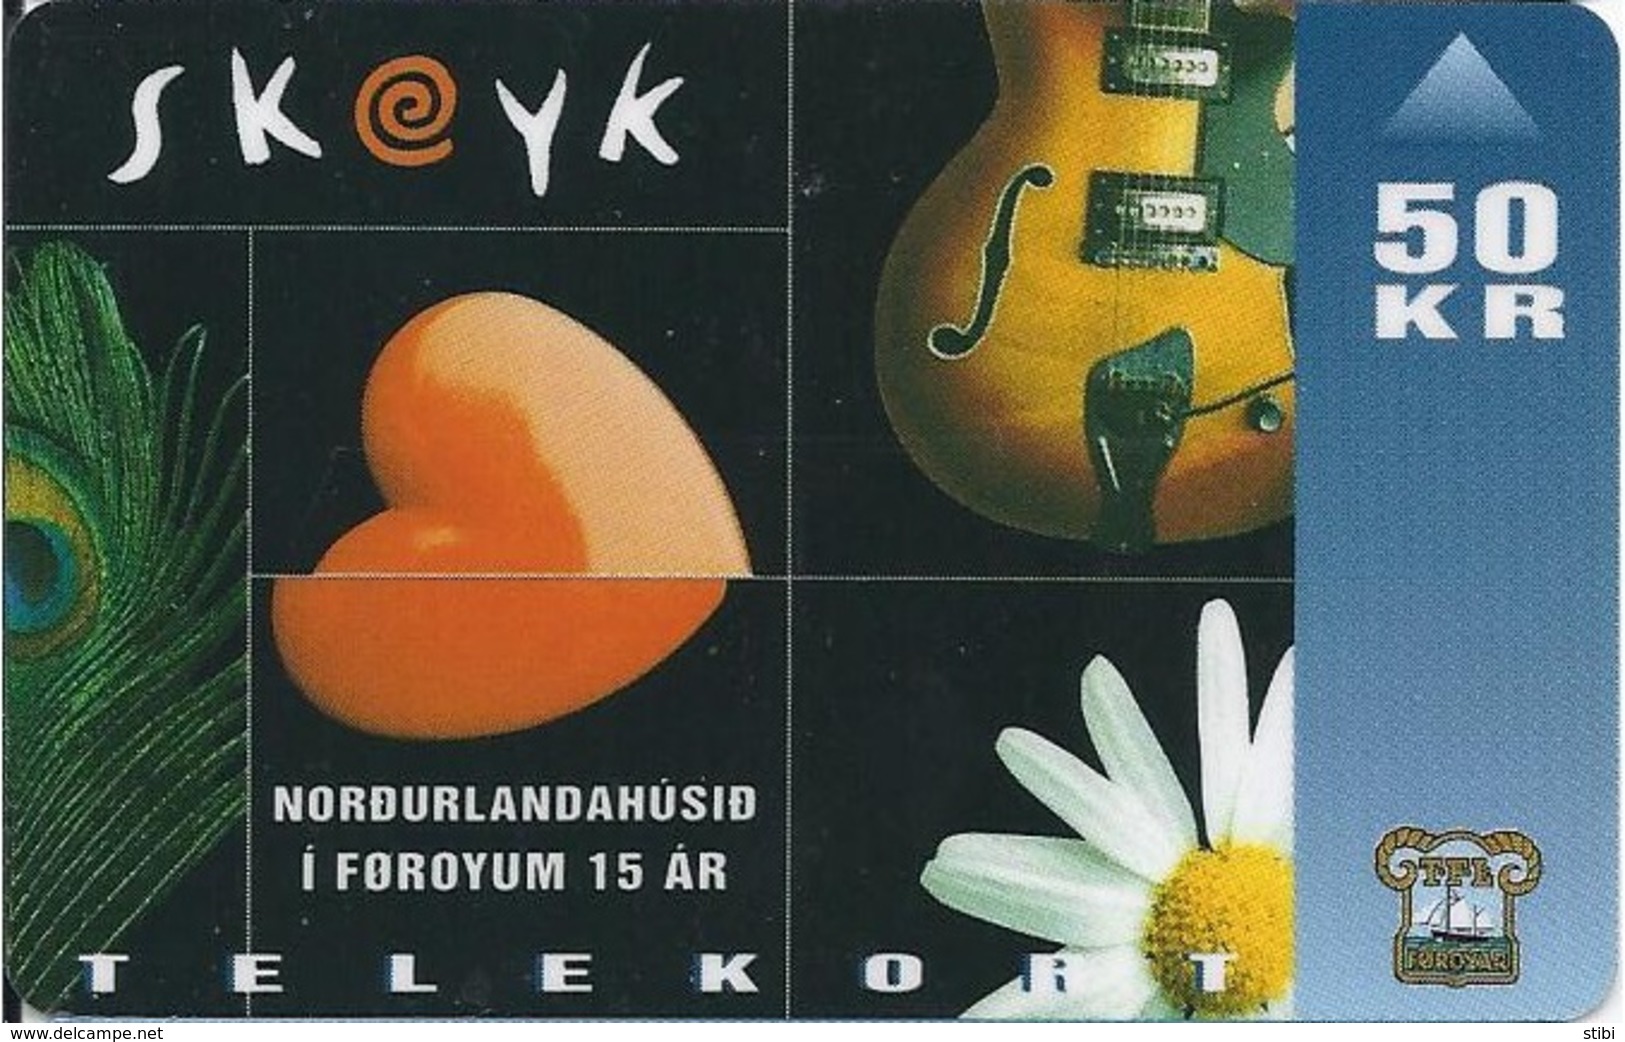 FAROE ISLANDS -Skeyk - Musical " - 35.000EX - Faroe Islands